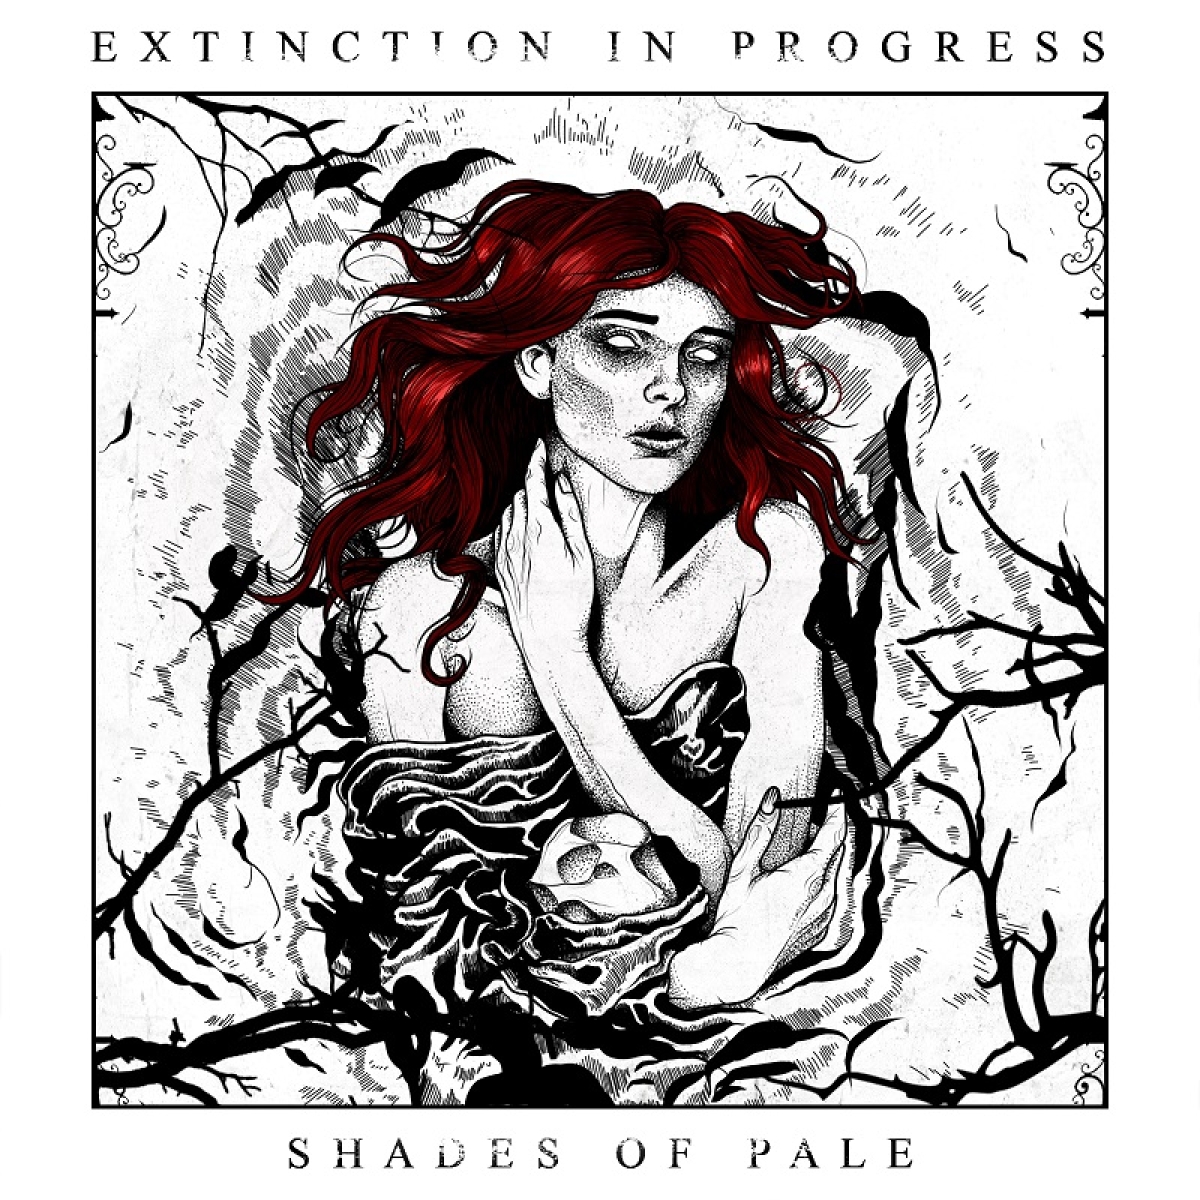 Shades of Pale -albumin kansikuvan on suunnitellut 
Juha-Matti Järvenpää.